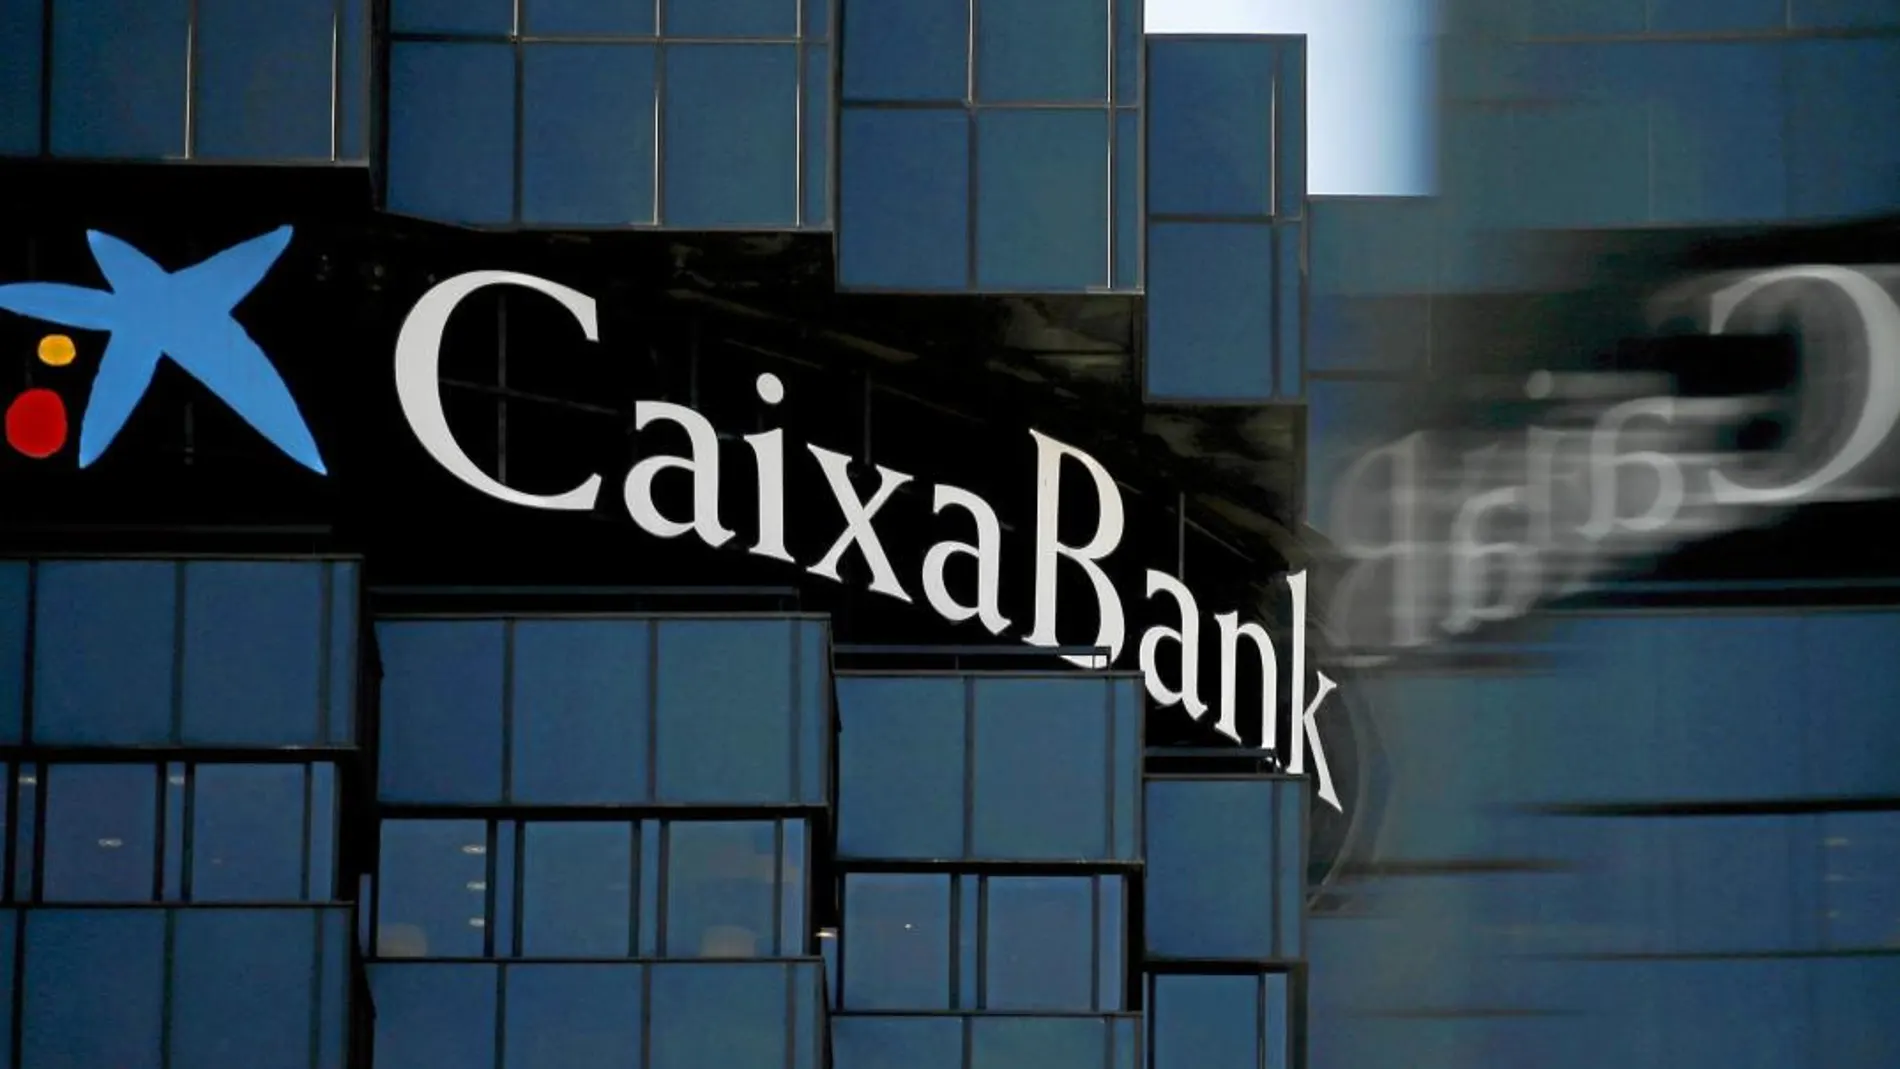 Caixabank se quita un peso de encima, los activos inmobiliarios